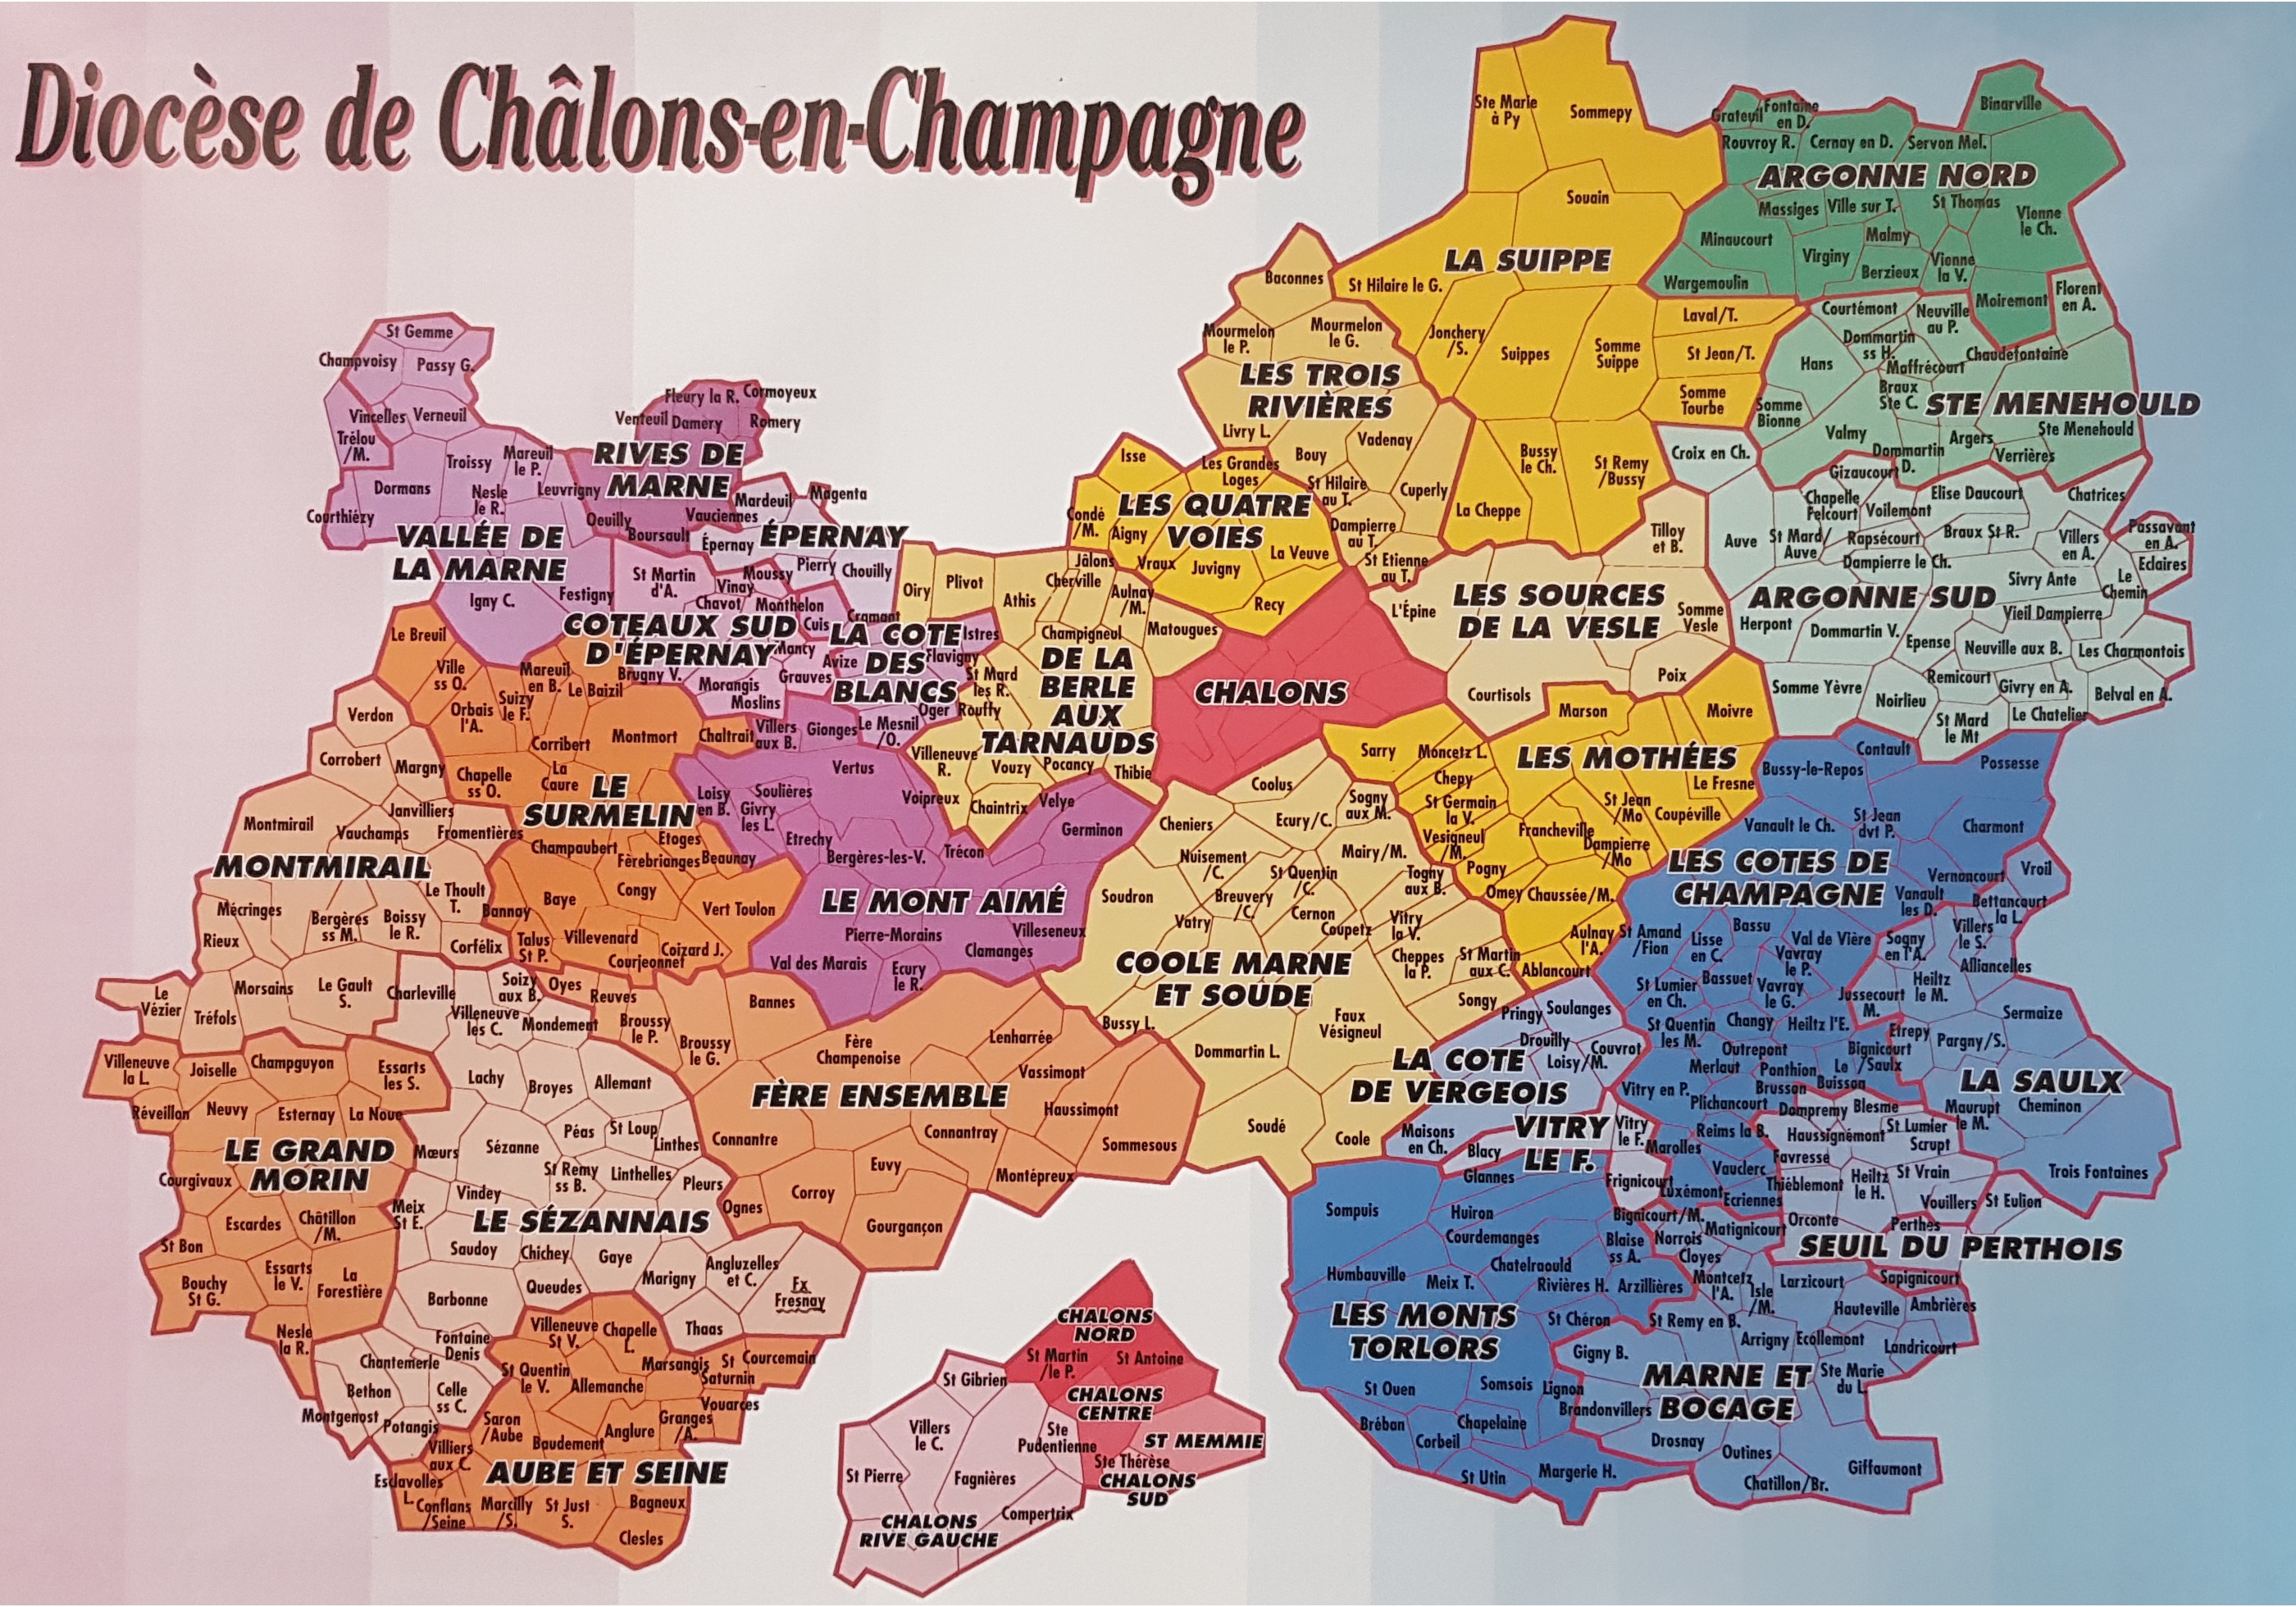  Carte du diocèse de Châlons-2 